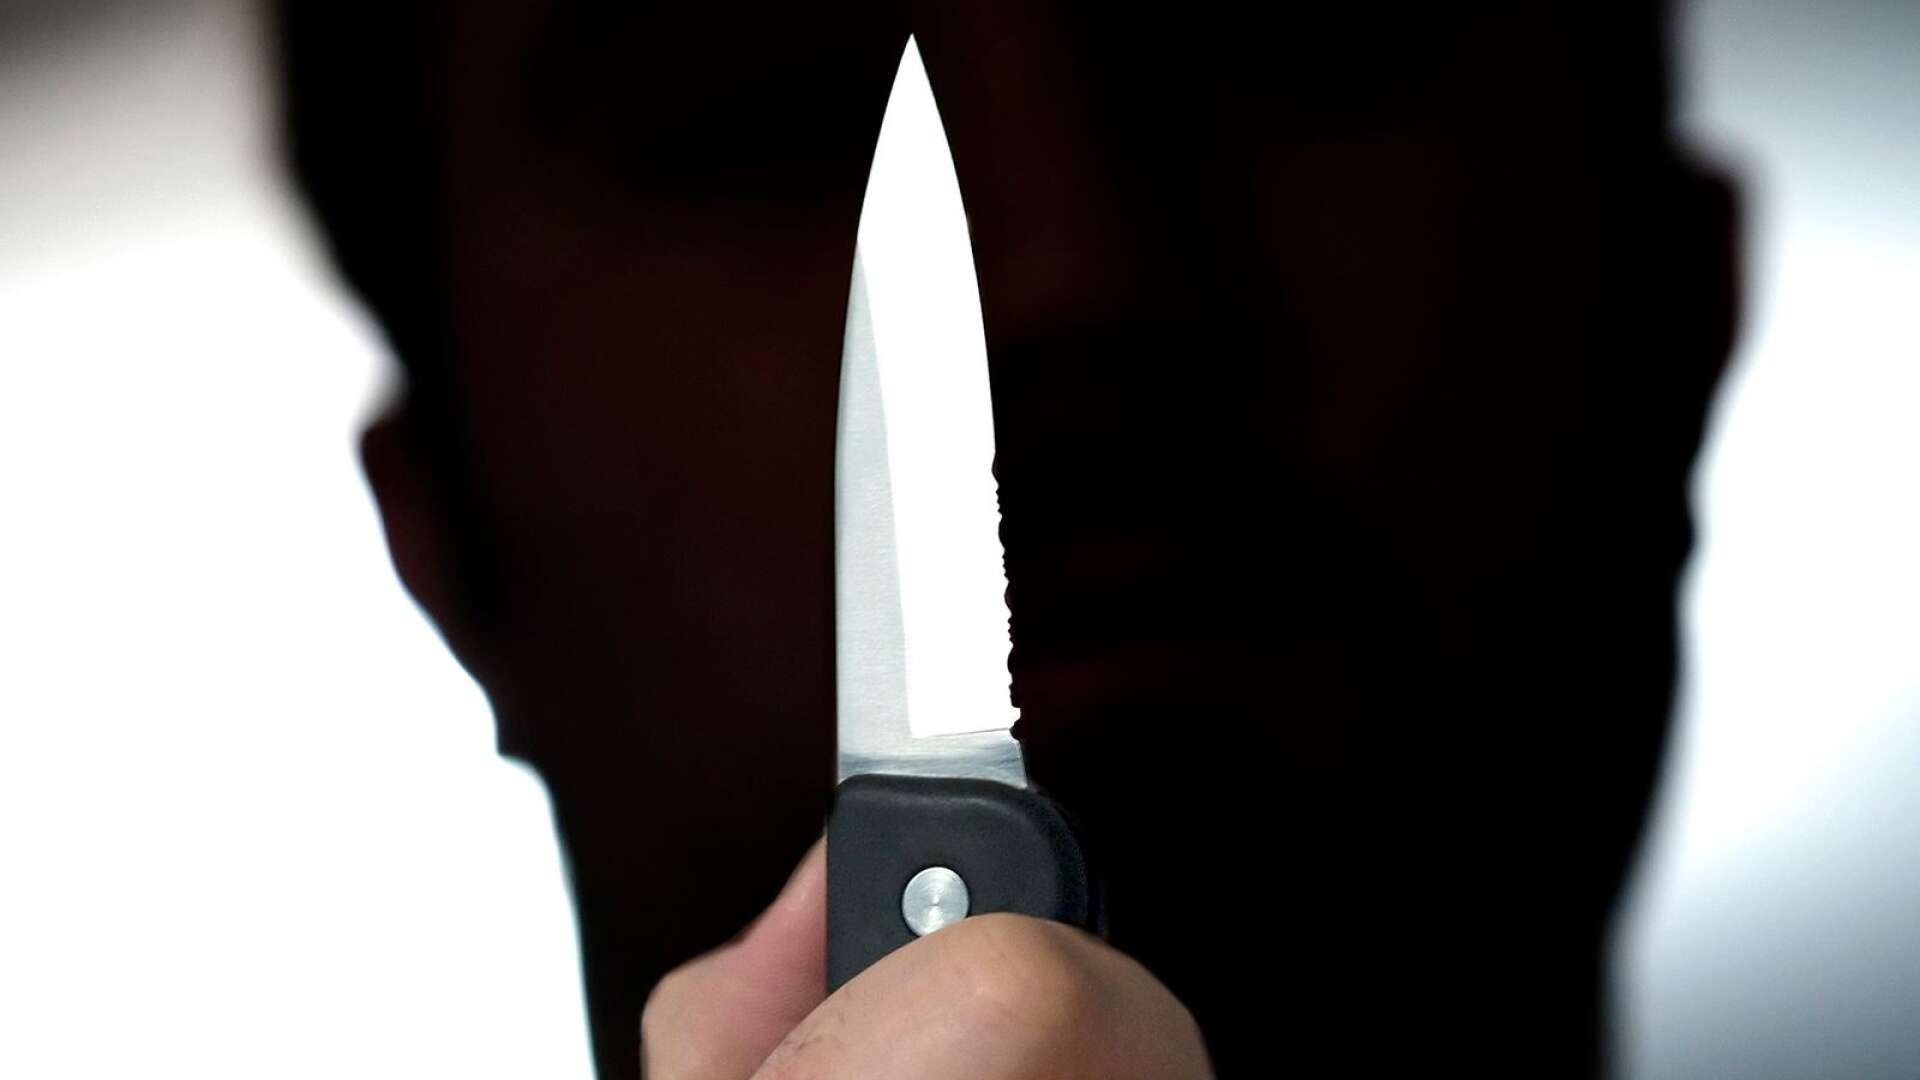 En man med kniv stoppades på lördagskvällen av en polispatrull i centrala Åmål. Mannen är misstänkt för brott mot knivlagen. Kniven togs i beslag och förverkades.